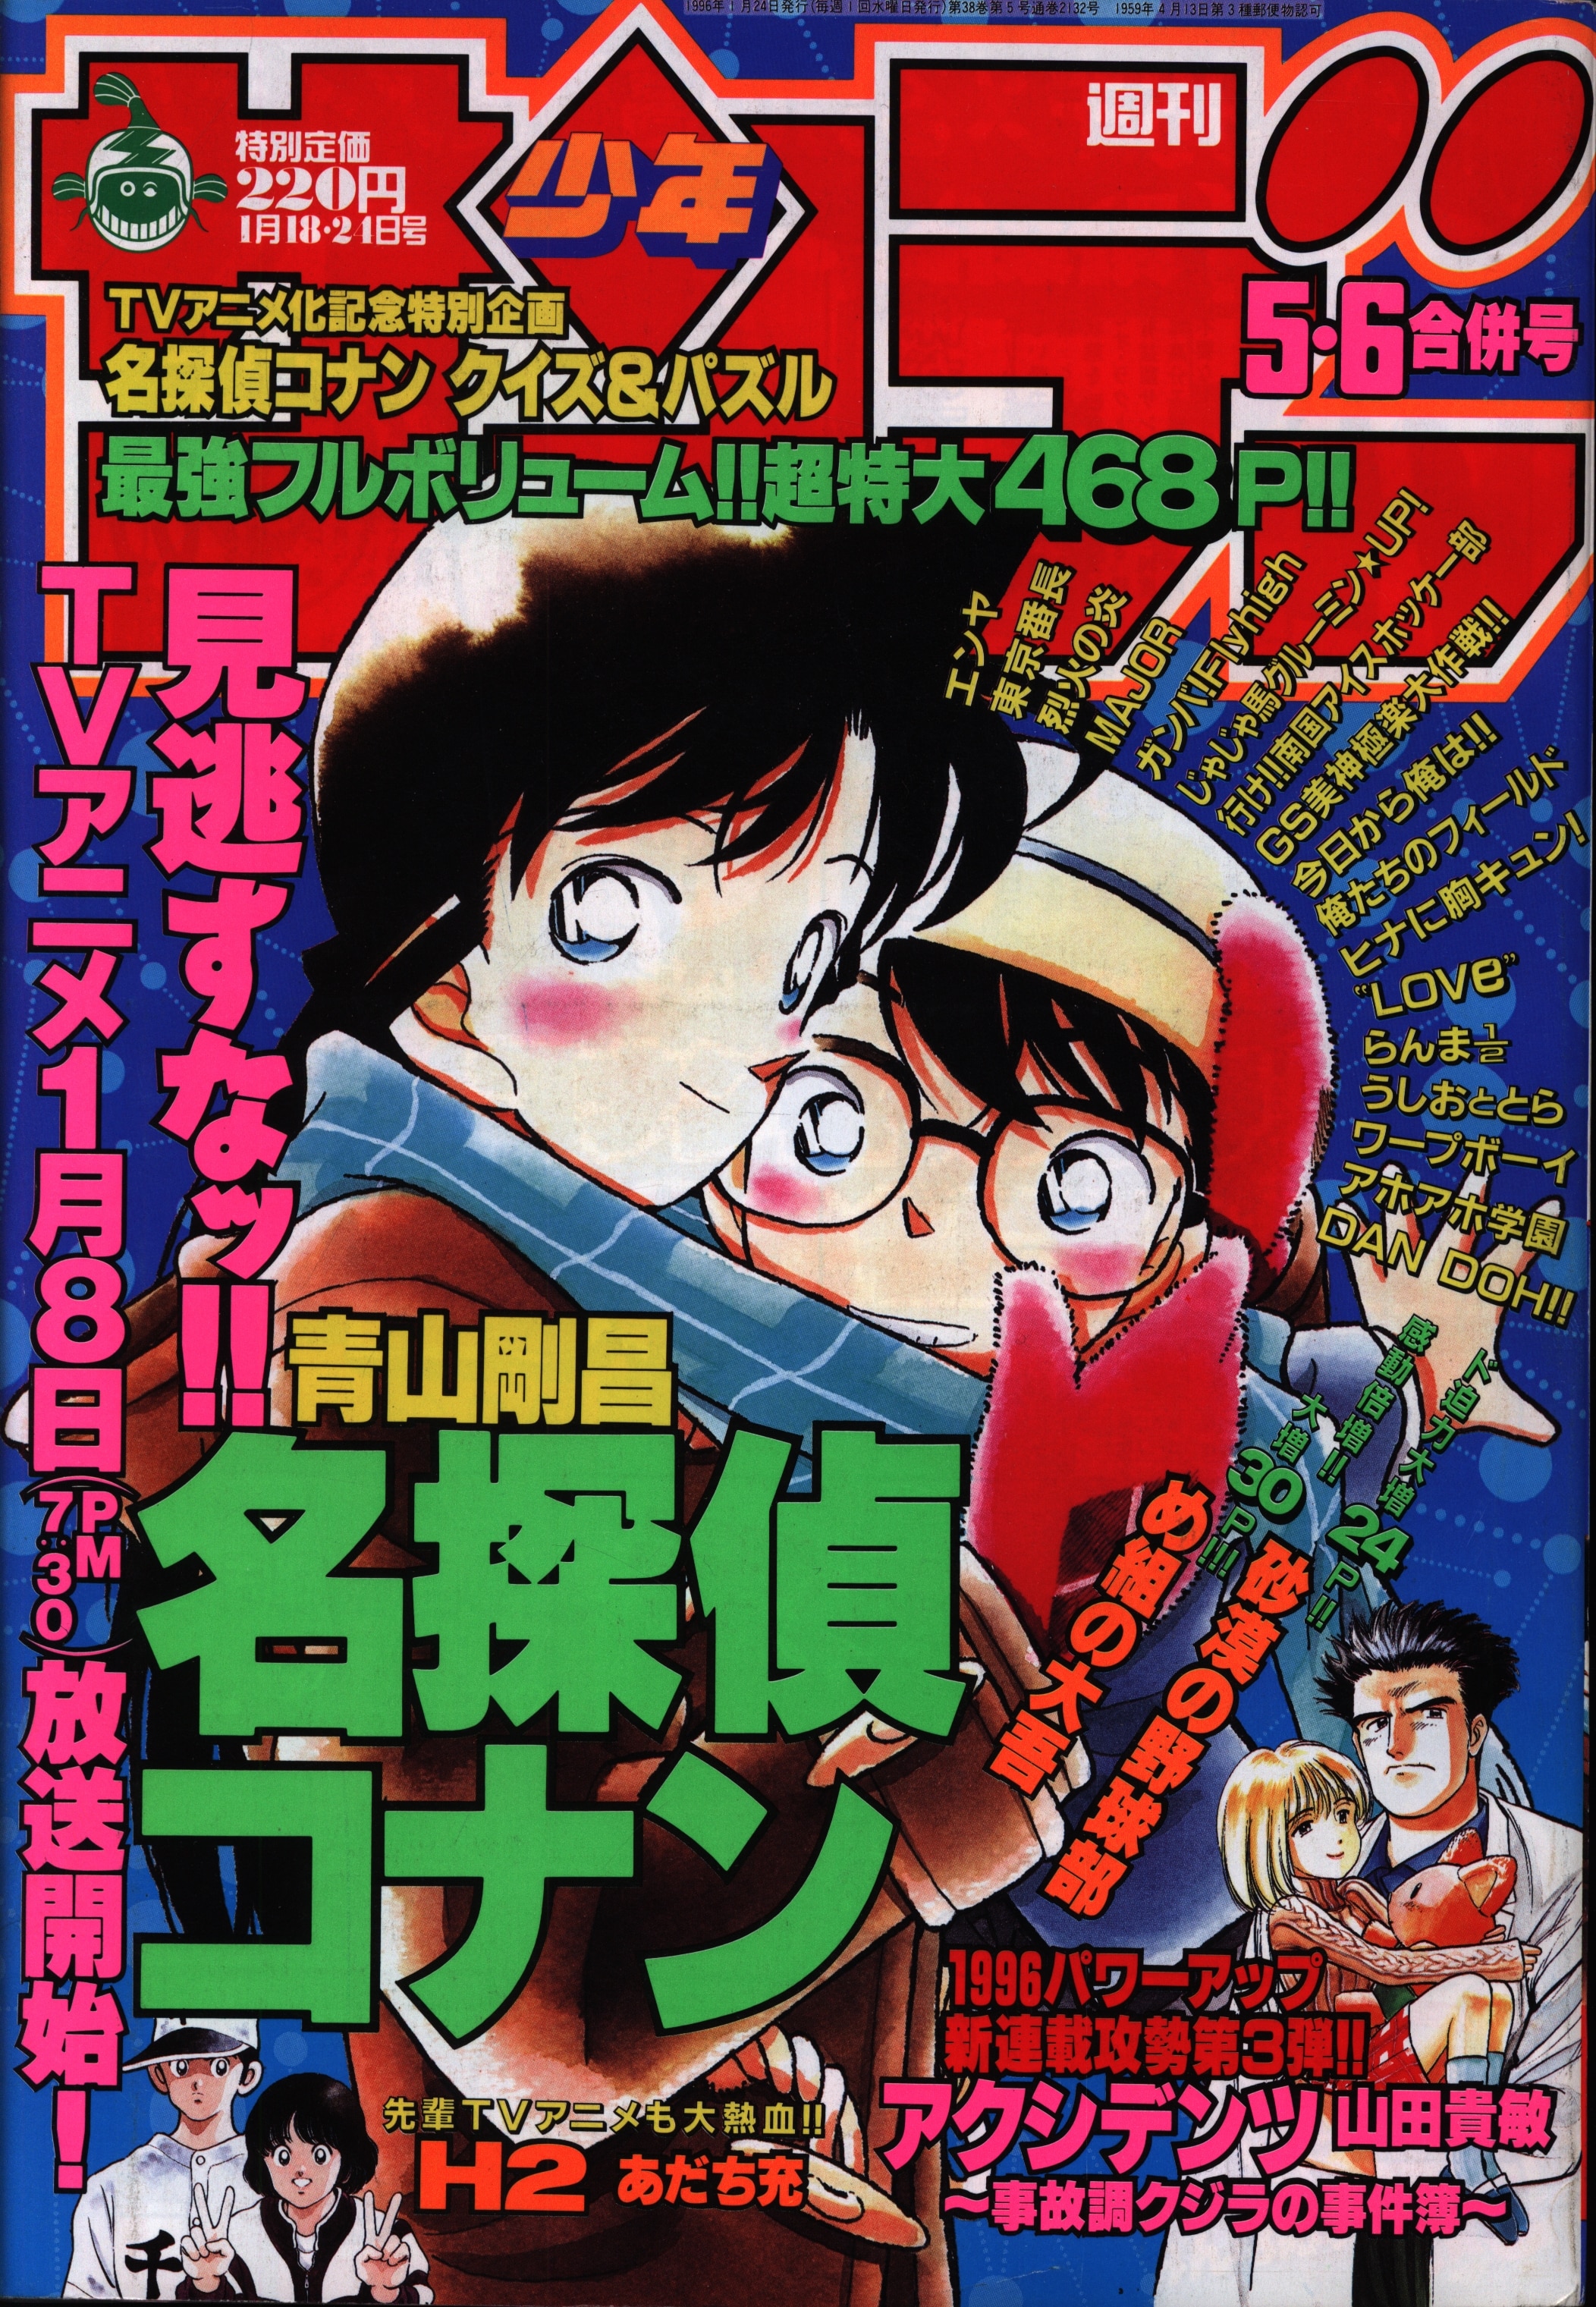 うしおととら 新連載号 週刊少年サンデー 1990年6号 平成2年 藤田 